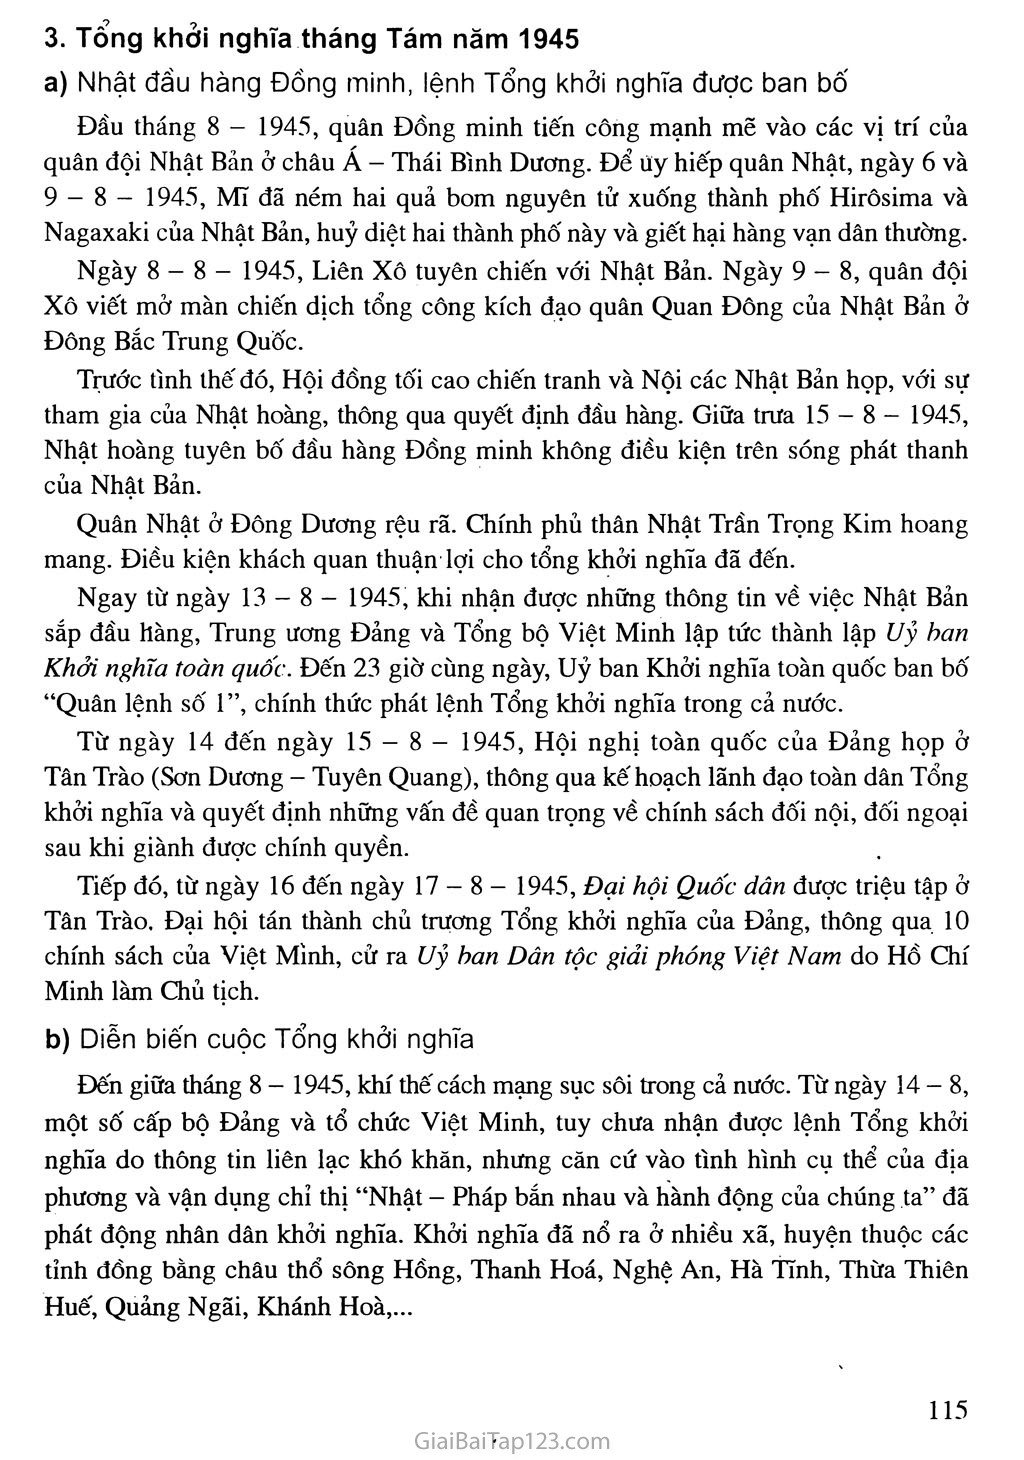 Bài 16. Phong trào giải phóng dân tộc và Tổng khởi nghĩa tháng Tám (1939 - 1945). Nước Việt Nam Dân chủ Cộng hoà ra đời trang 14